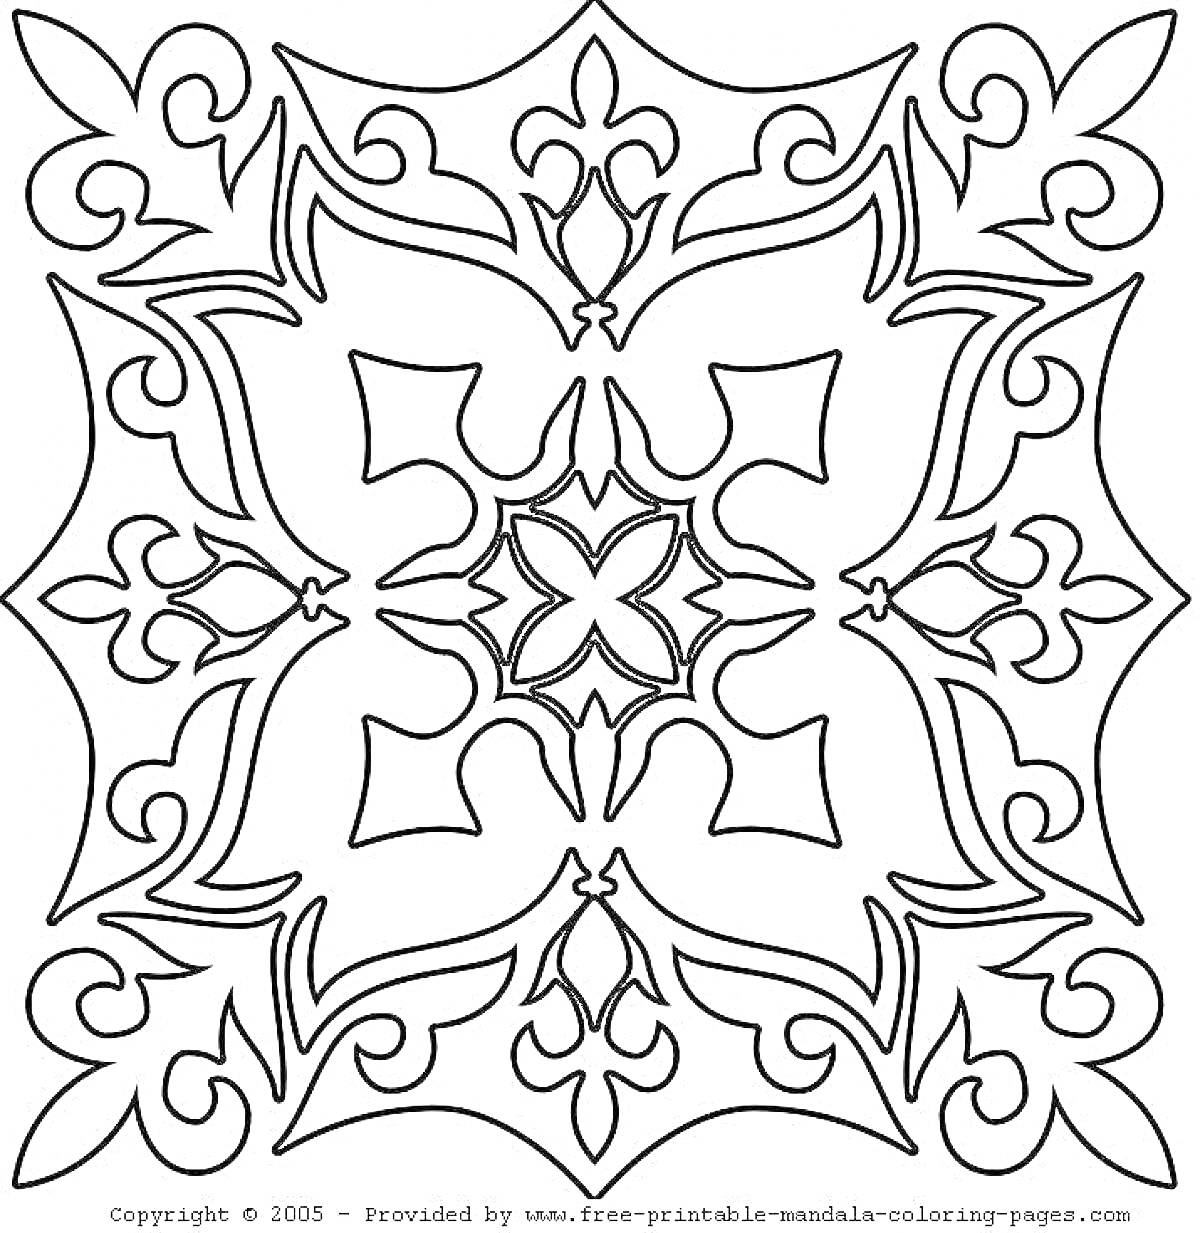 Раскраска Татарский орнамент с четырьмя лопастными элементами и завитками